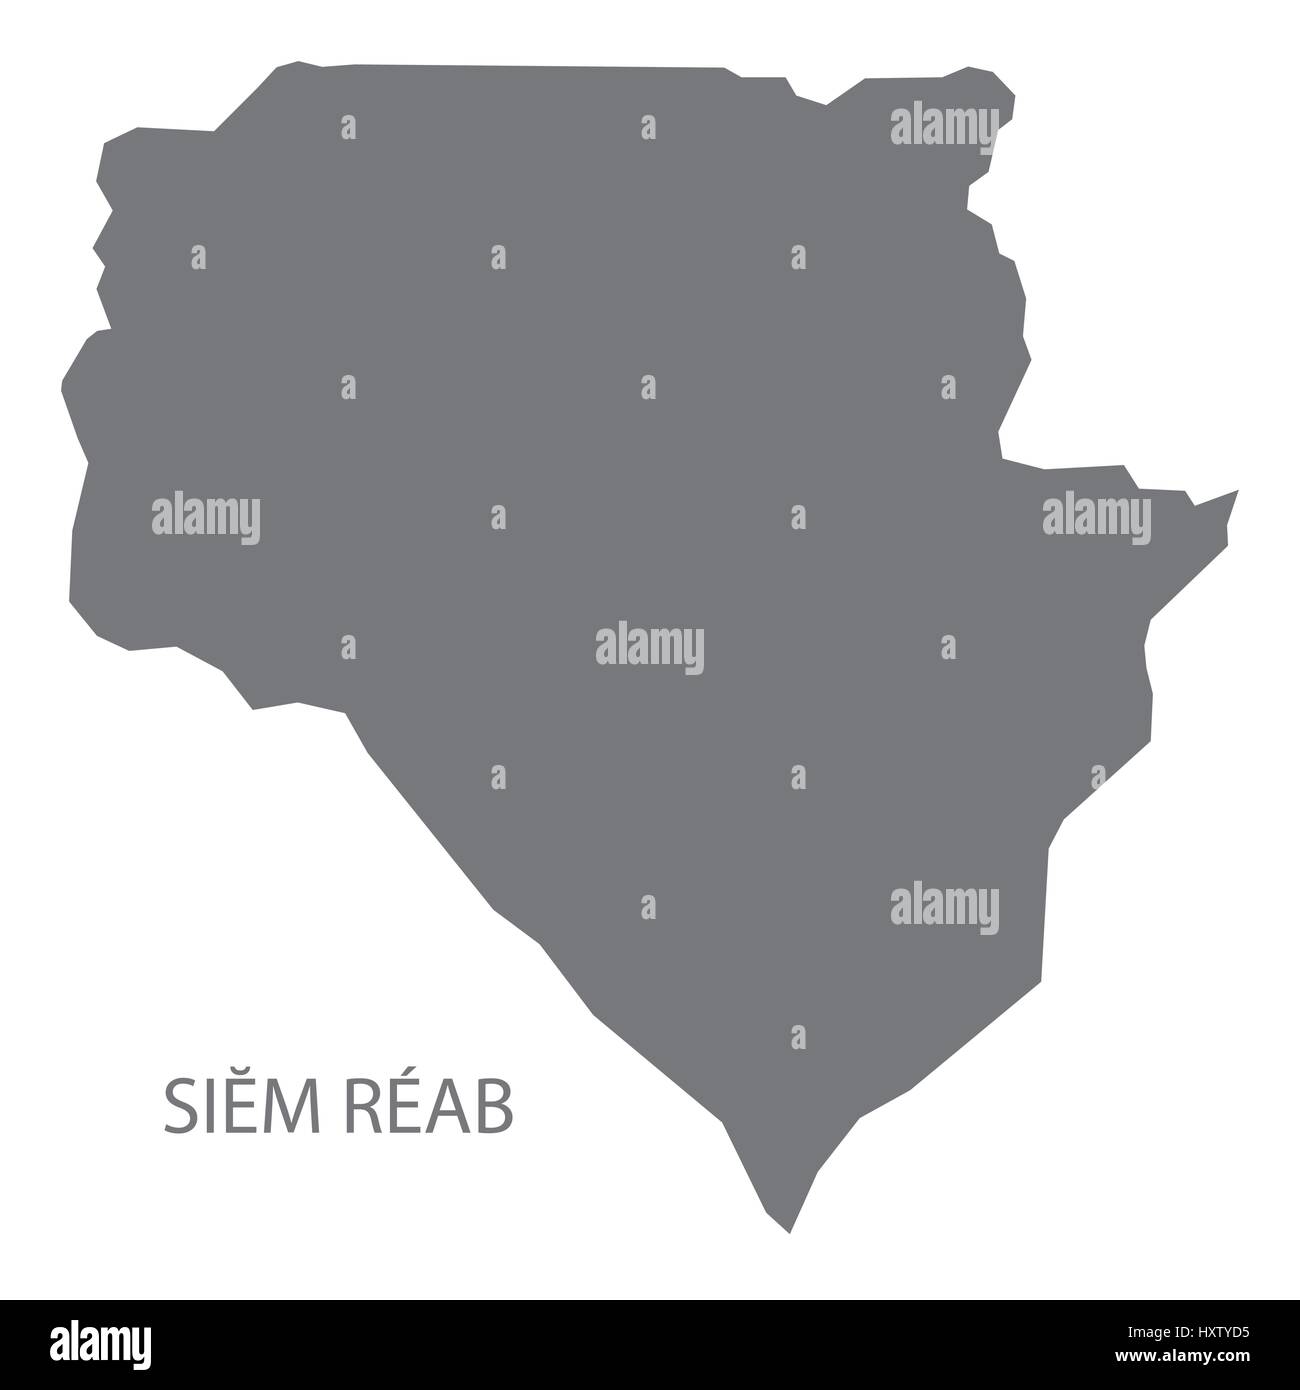 Le Reab Cambodge Siem province site gris illustration silhouette Illustration de Vecteur